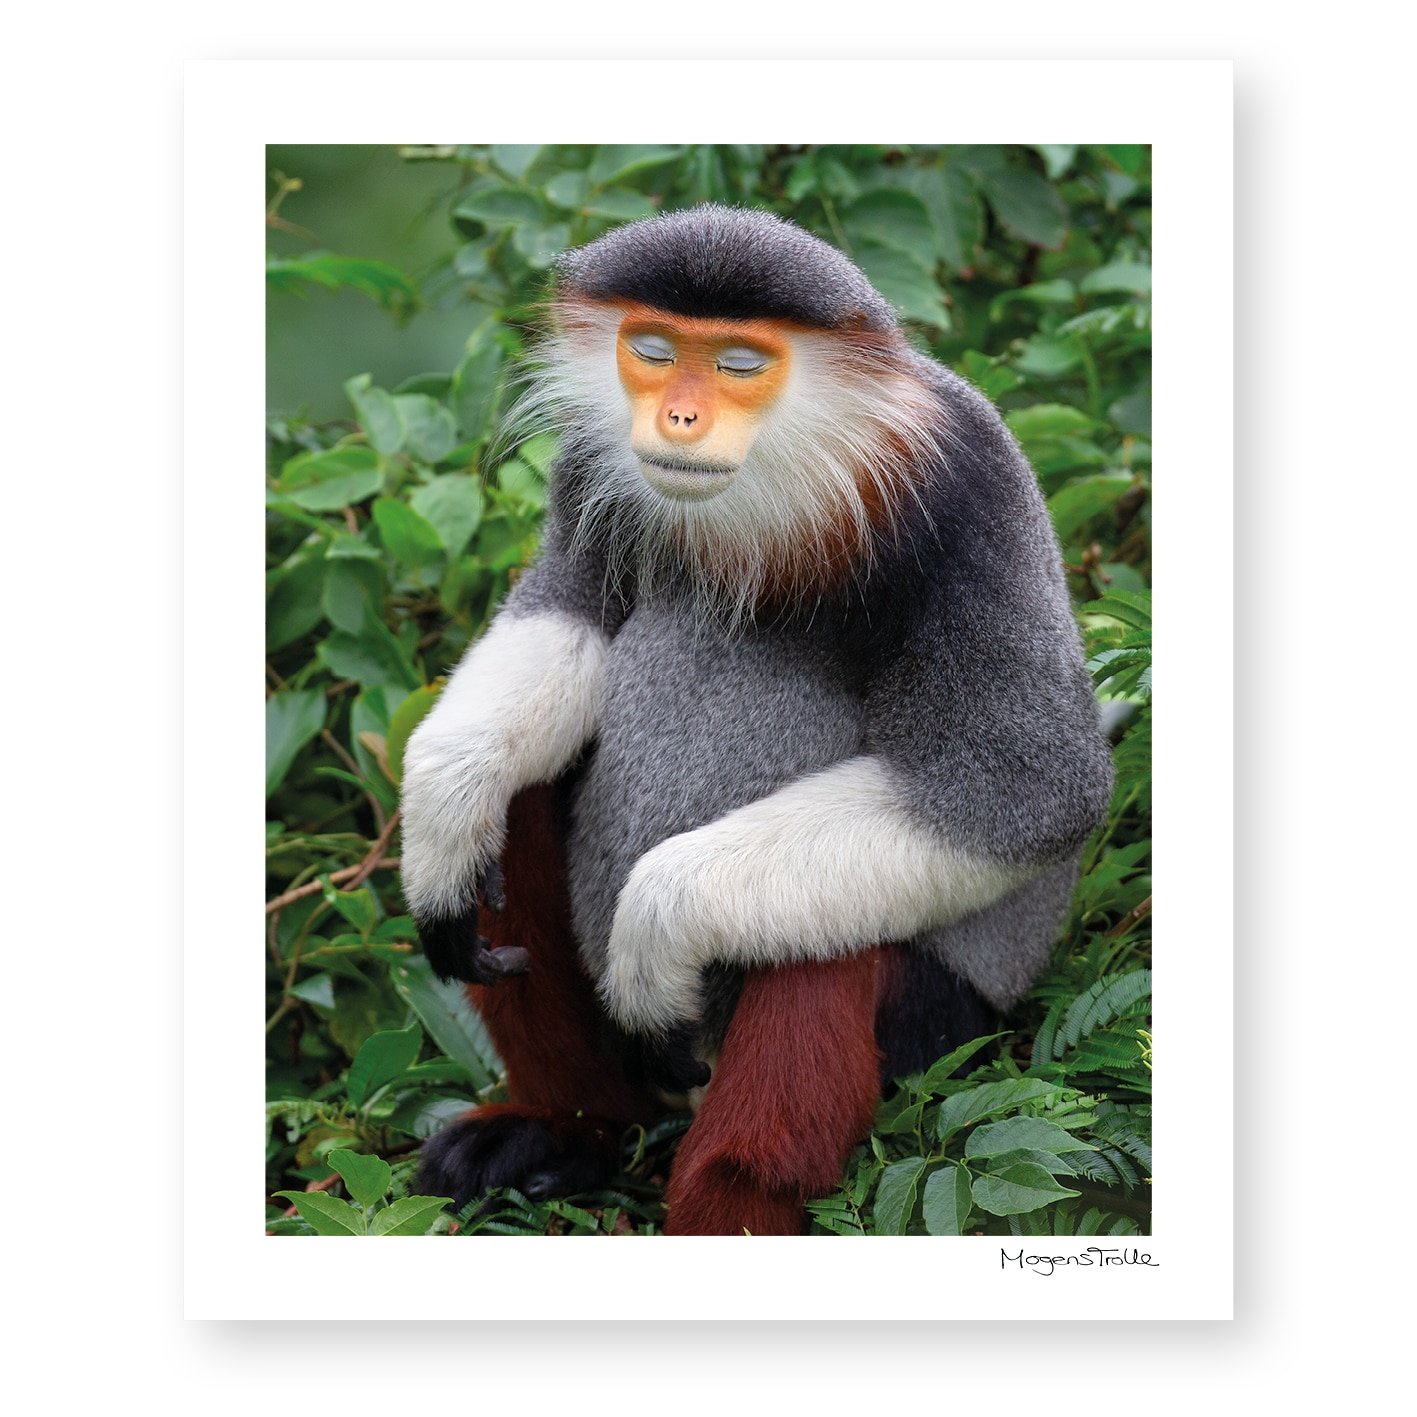 The zen monkey in profile